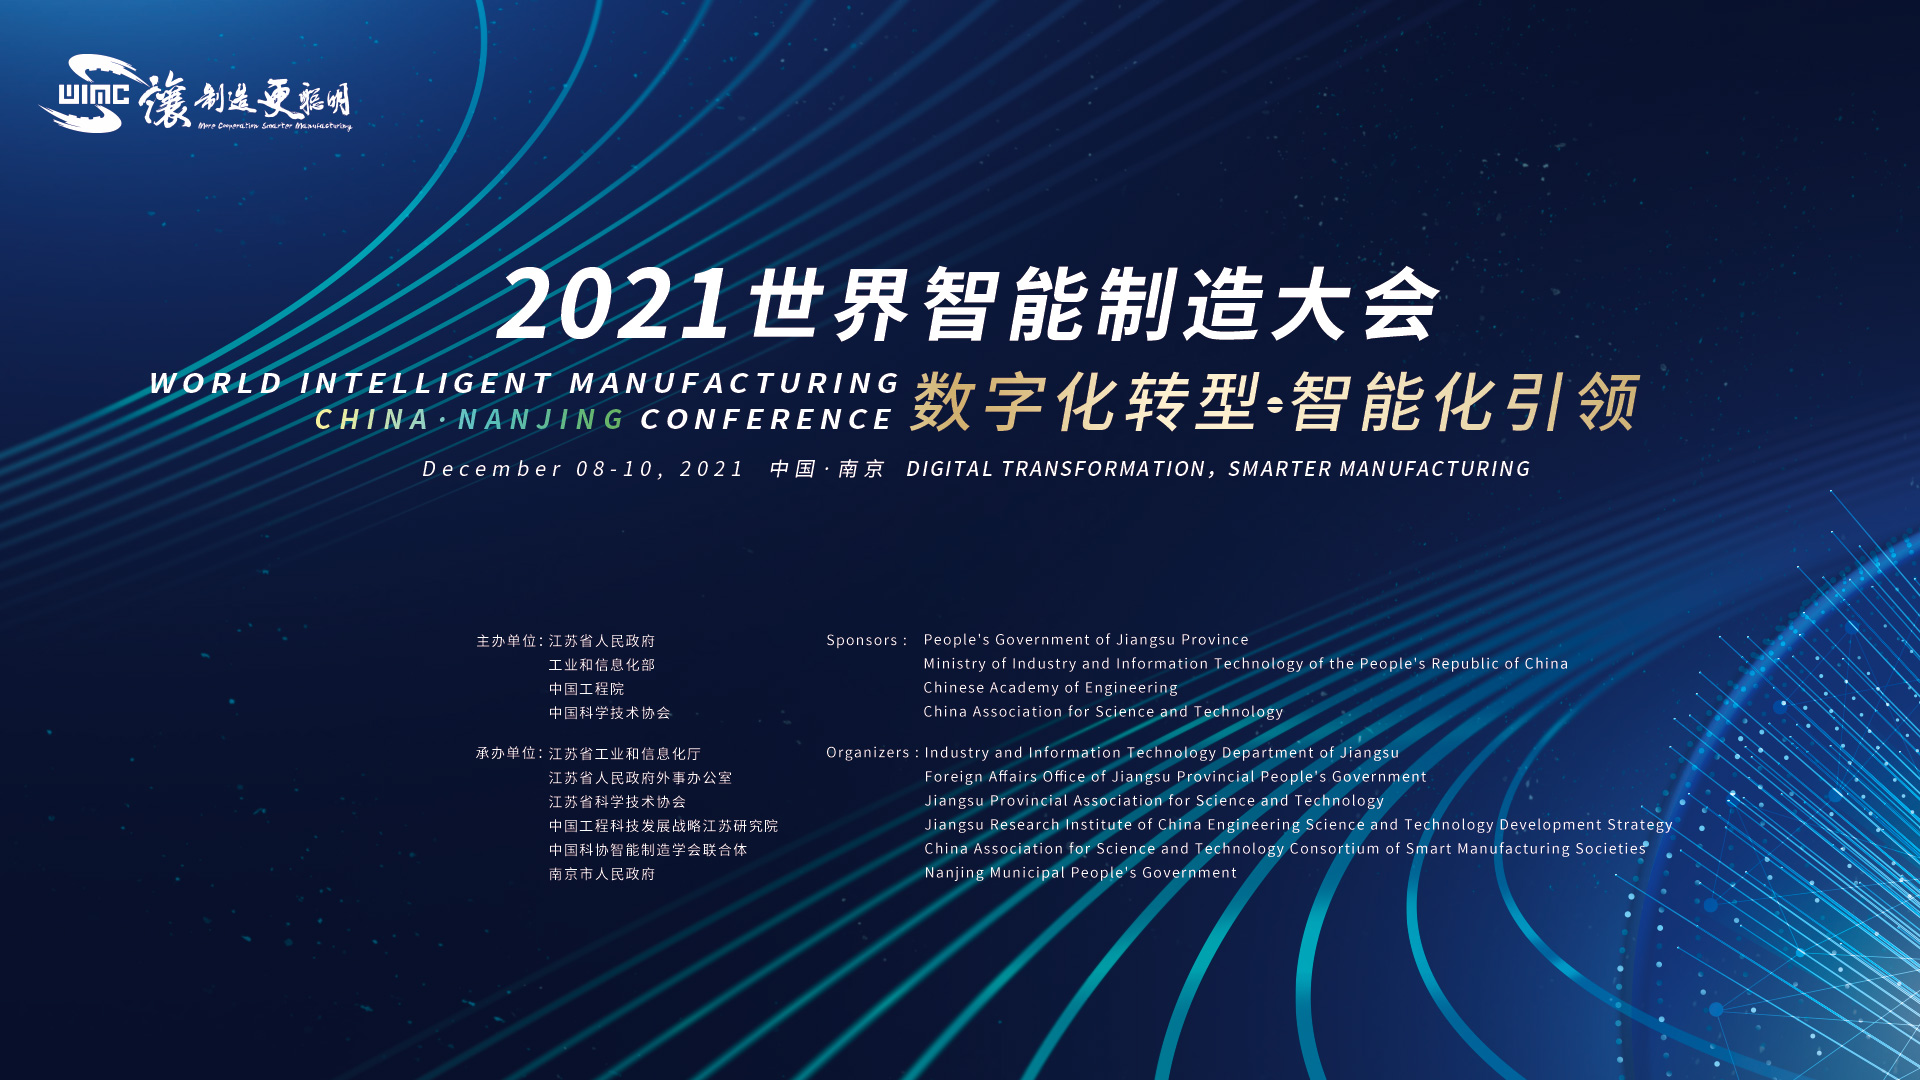 数字化转型、智能化引领 2021世界智能制造大会8日在南京开幕